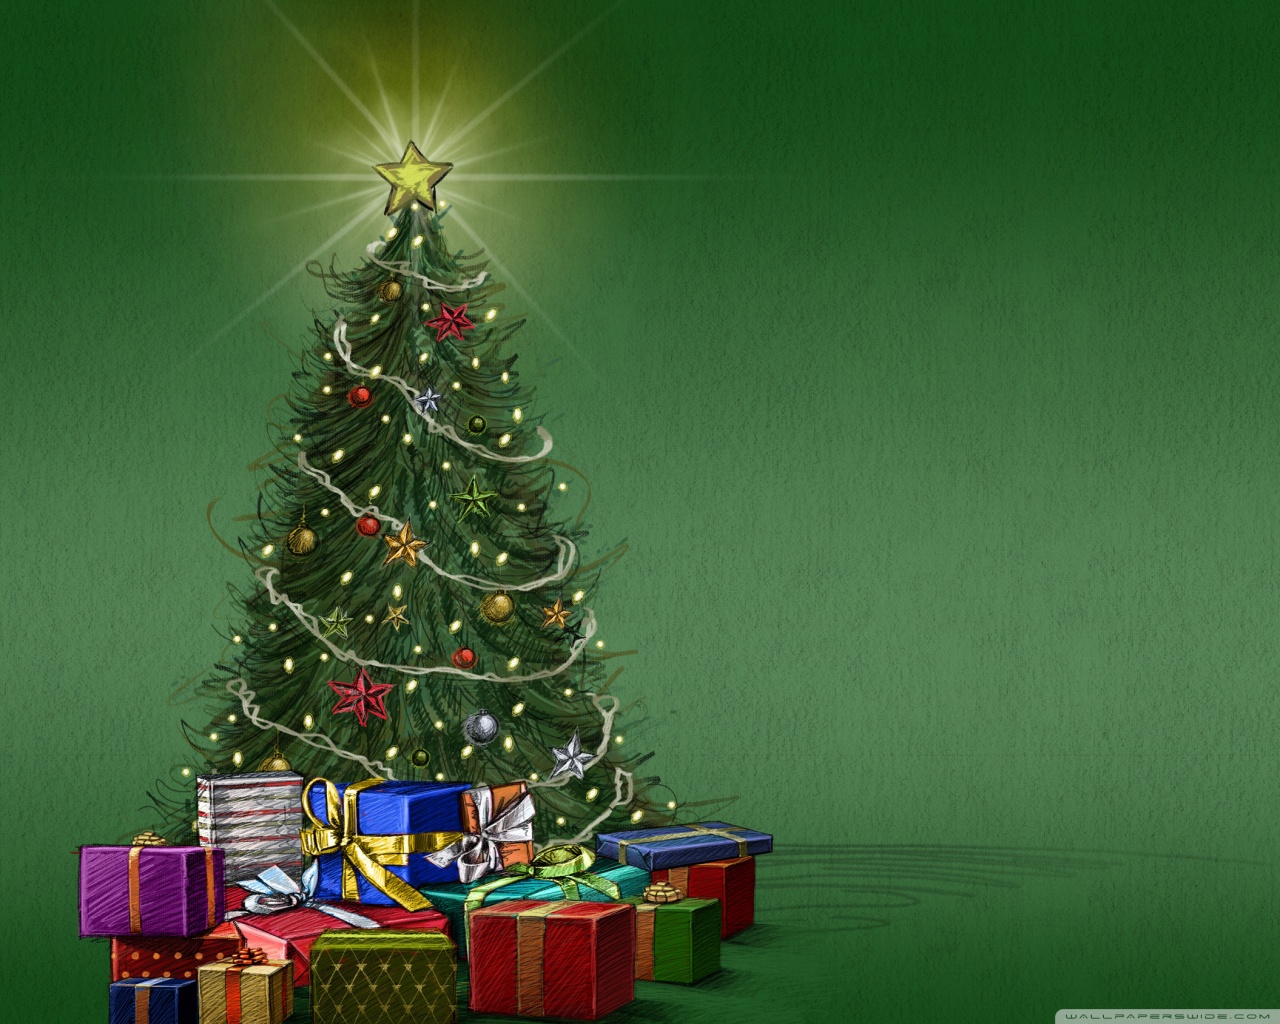 グリーティングカードの壁紙,クリスマスツリー,クリスマスの飾り,クリスマス,木,クリスマスオーナメント